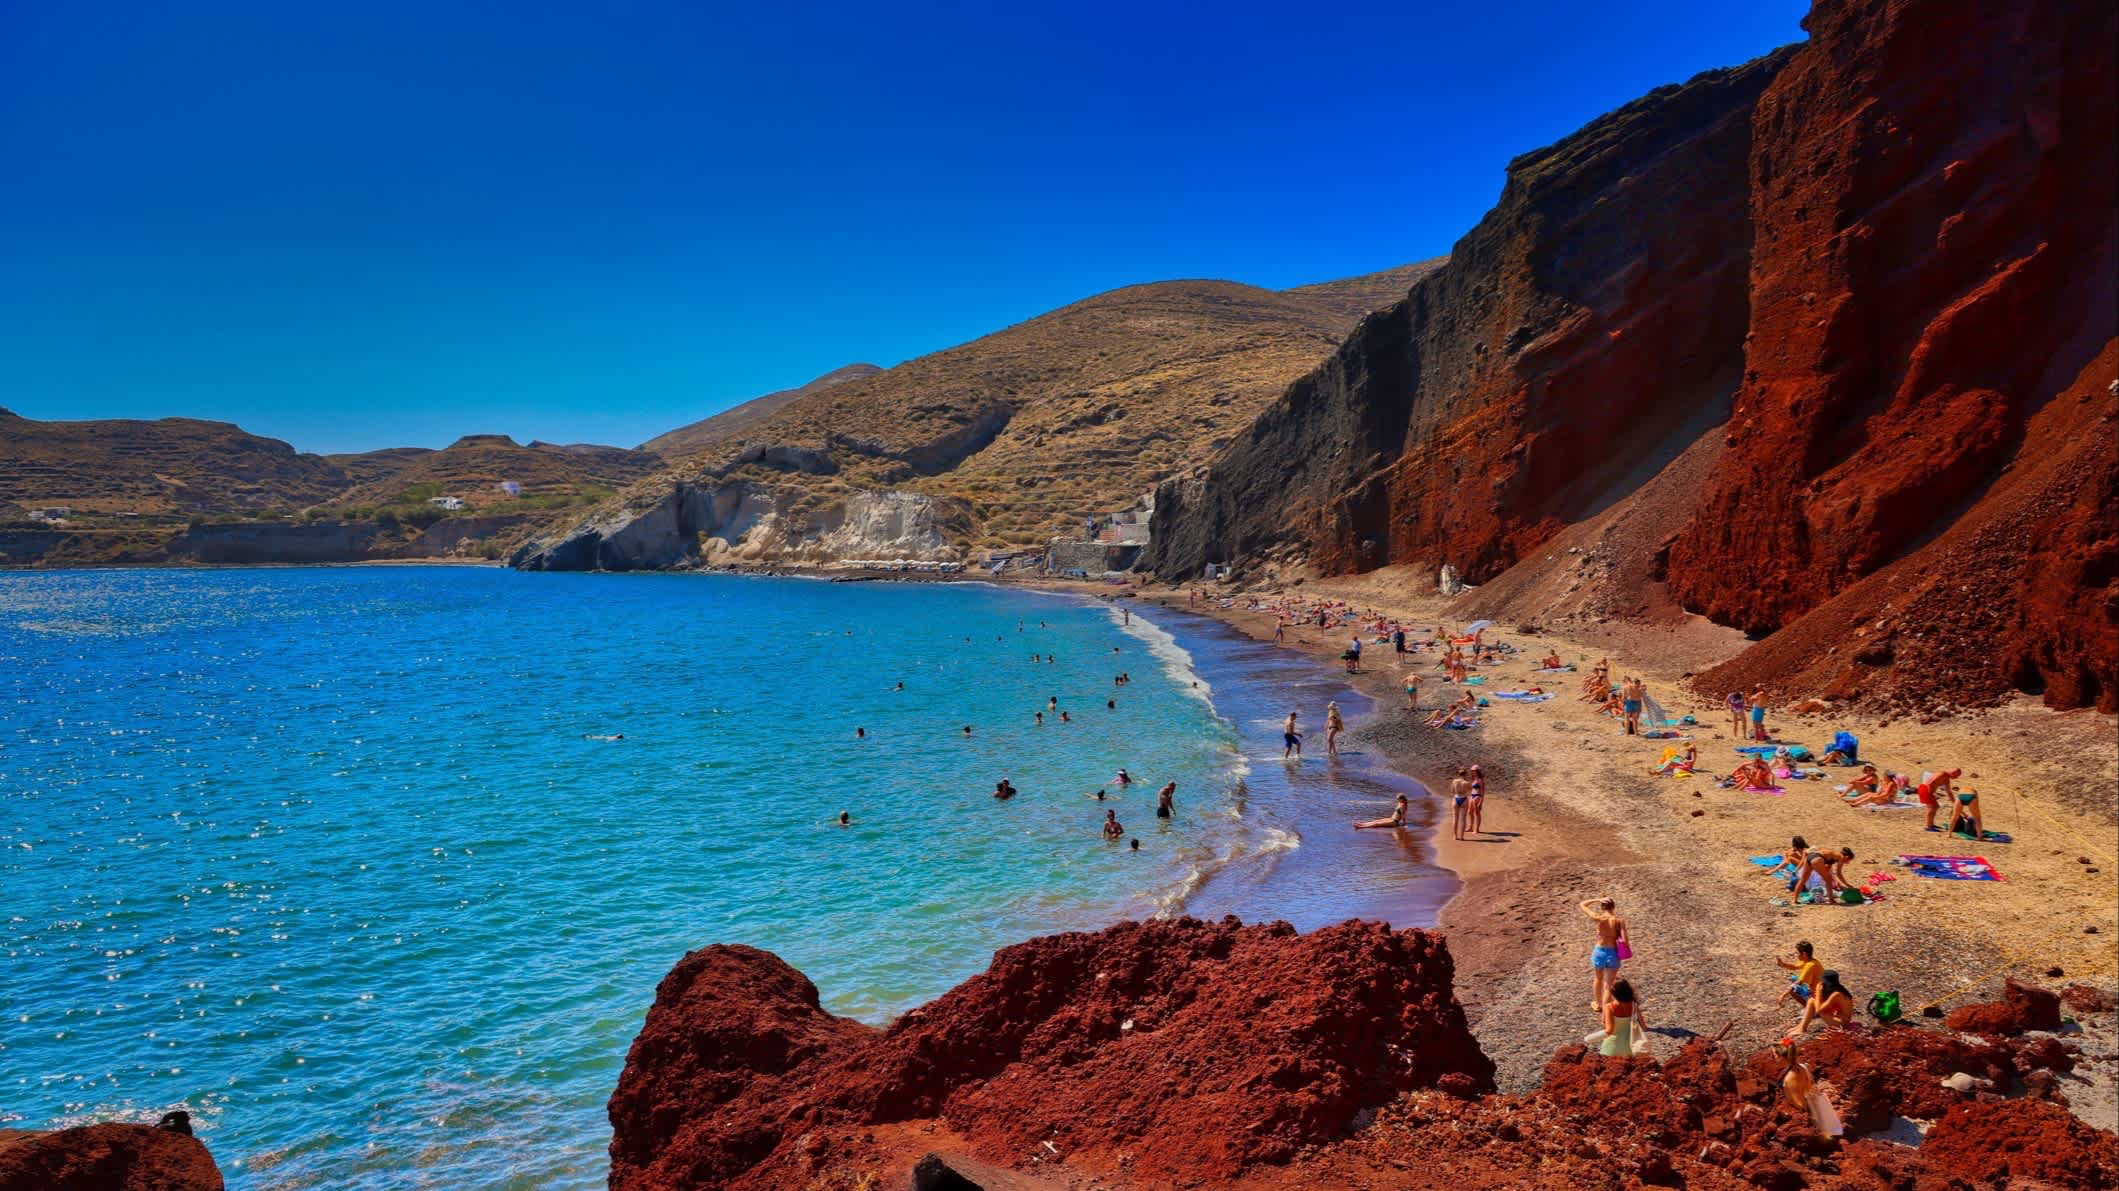 Blick zum Red Beach auf Santorini, Griechenland mit imposanten roten Klippen sowie Menschen am Strand.